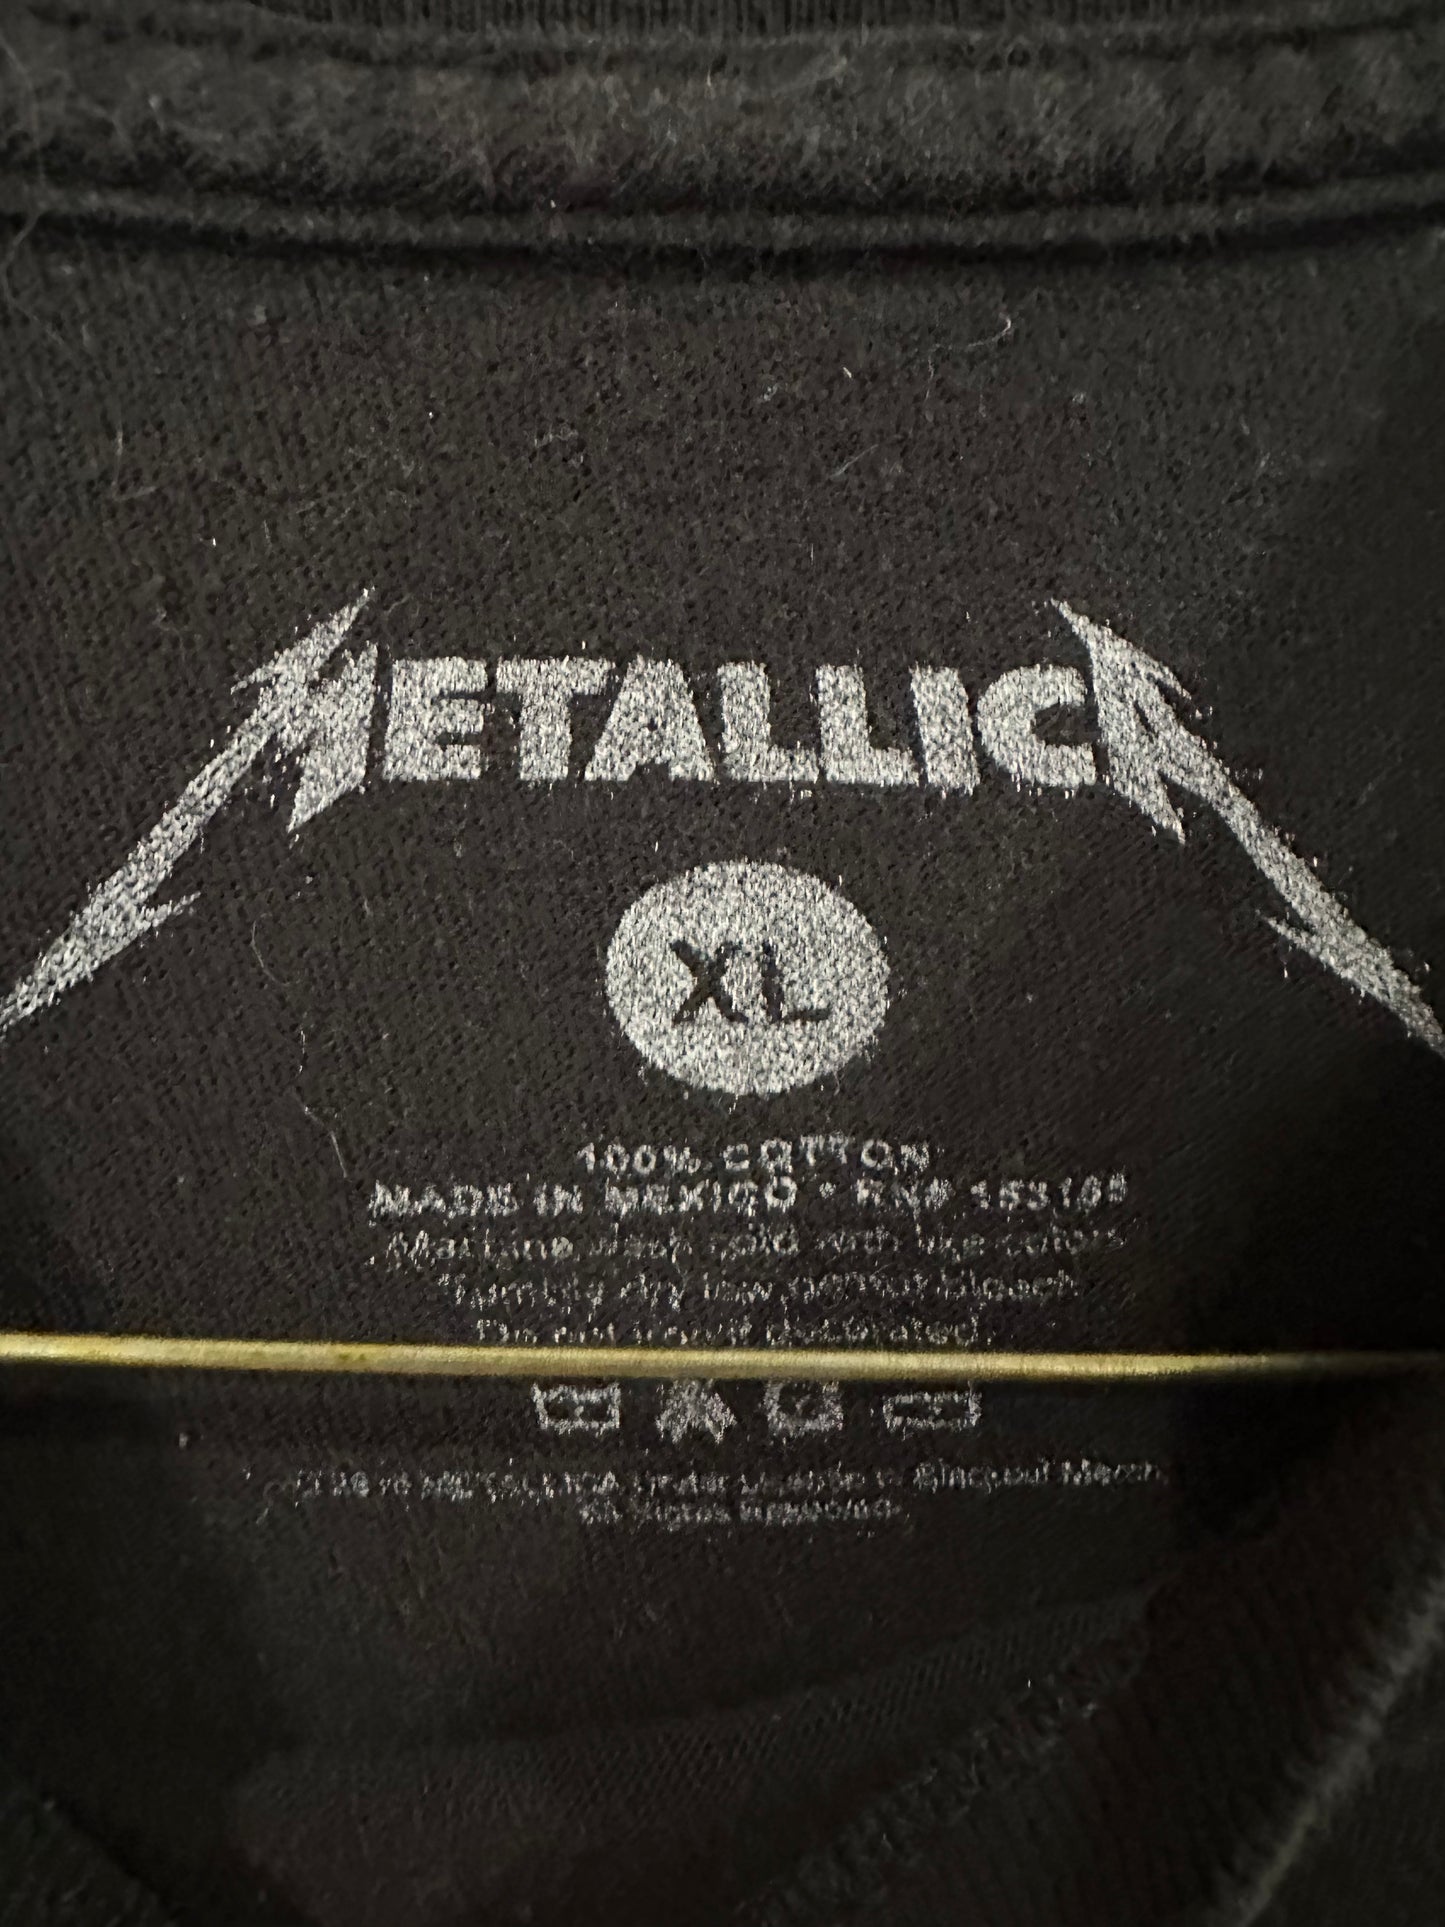 Metallica tee